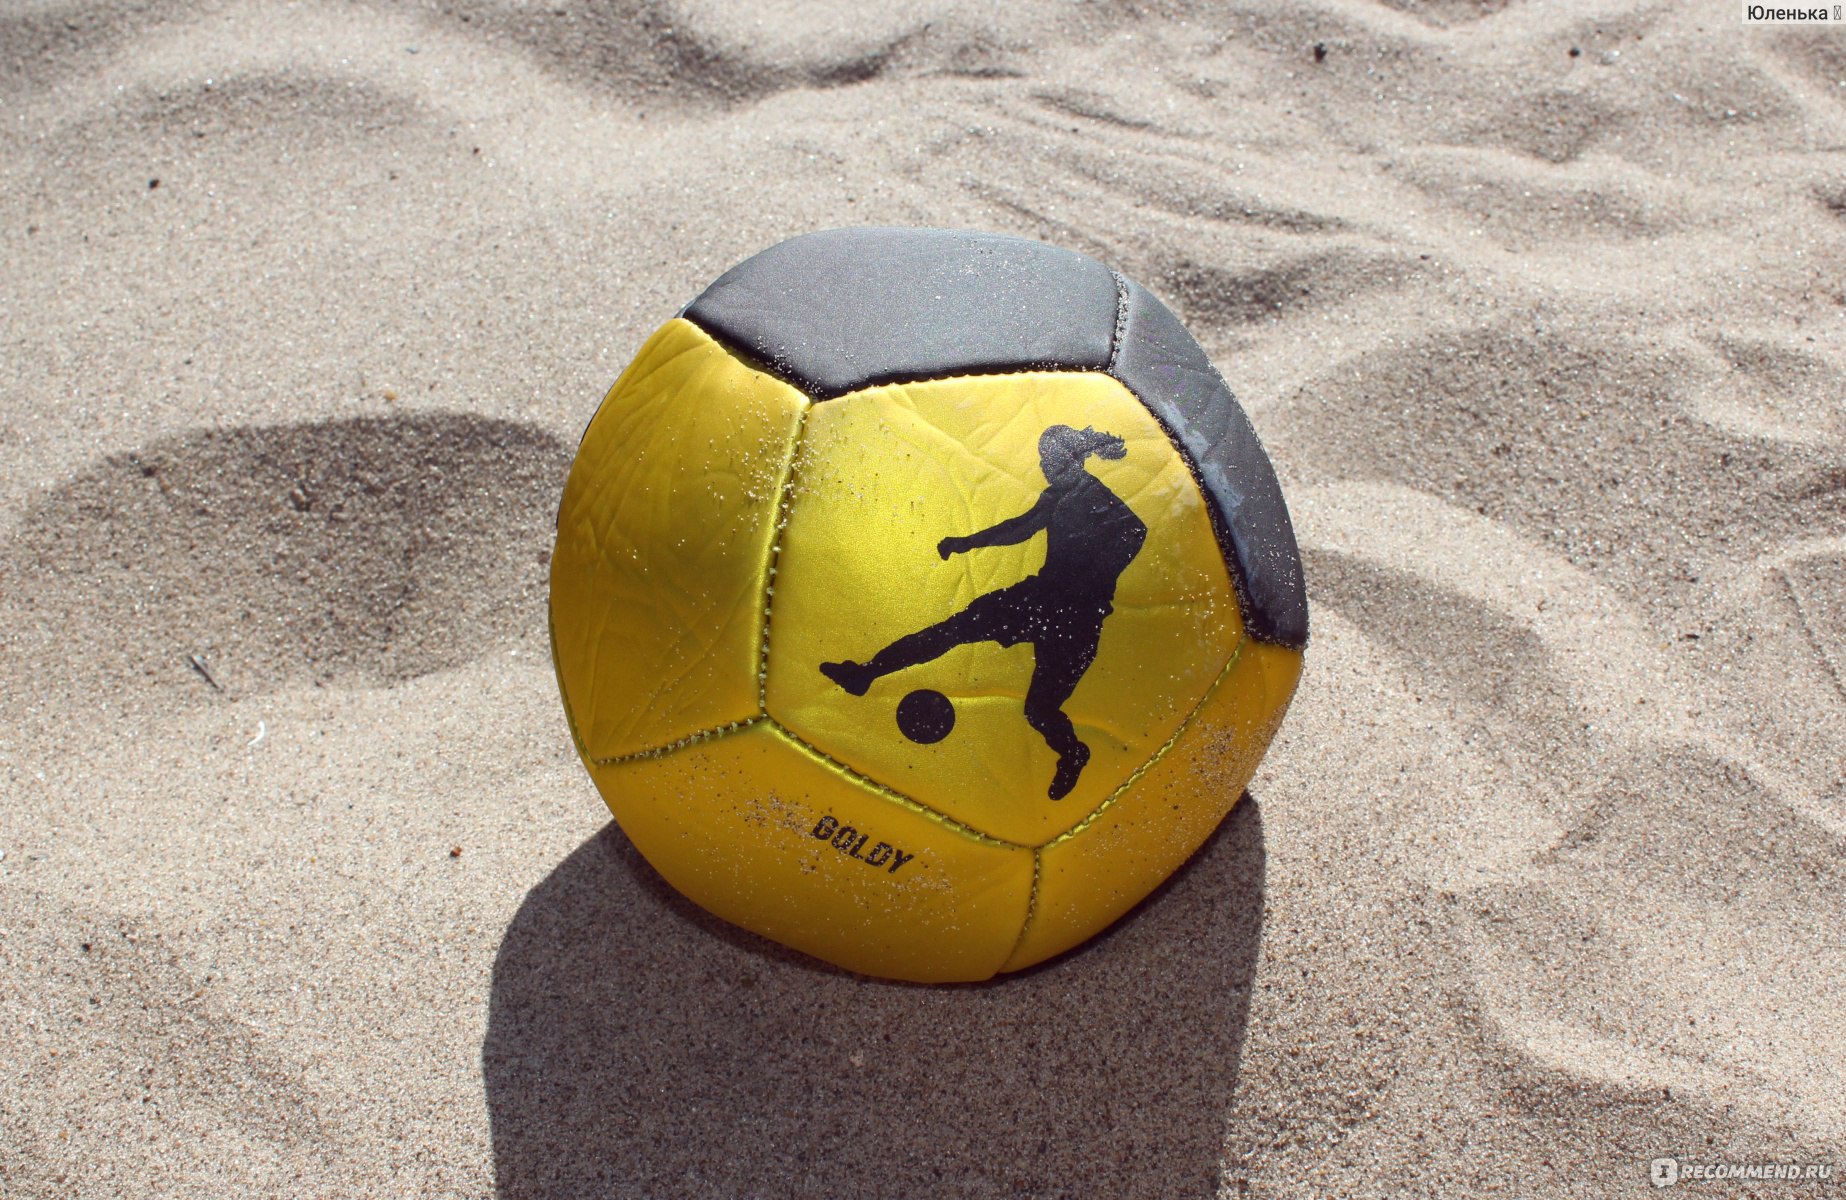 Lost ball. Мяч Роналдиньо магнит. Мяч Seri Jakala. Мини мяч Рональдиньо для уличного футбола. Мяч из отходов.